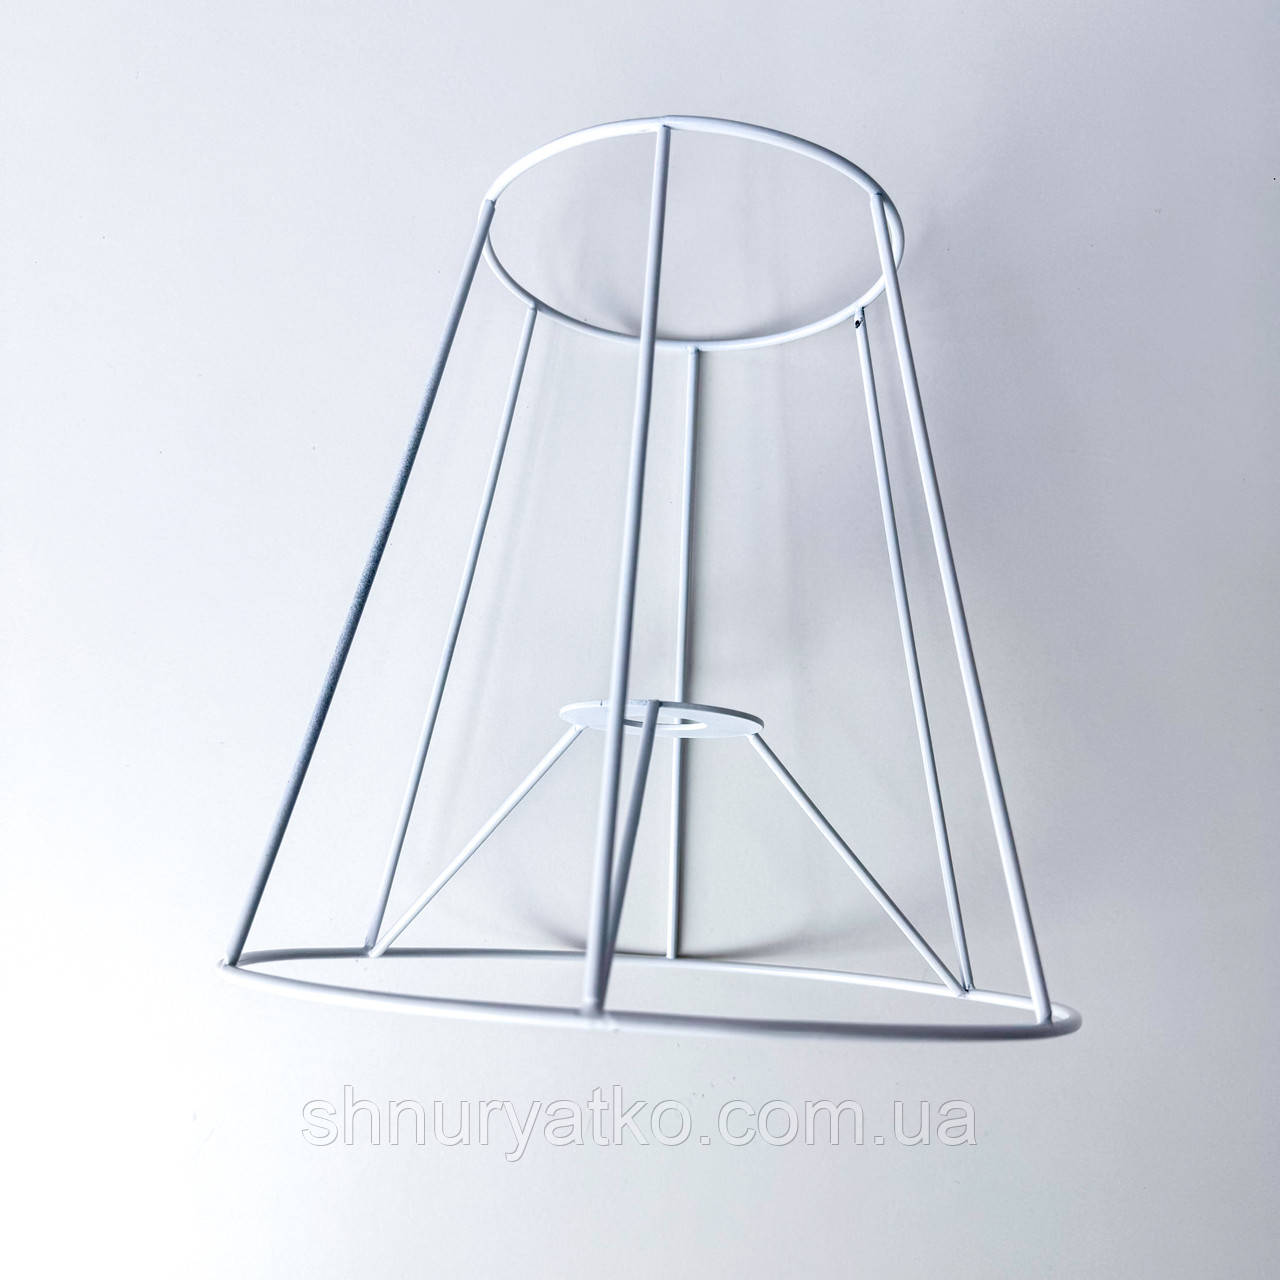 Каркас для абажура конус 25 см білий, основа для настільної лампи макраме, цоколь Е14